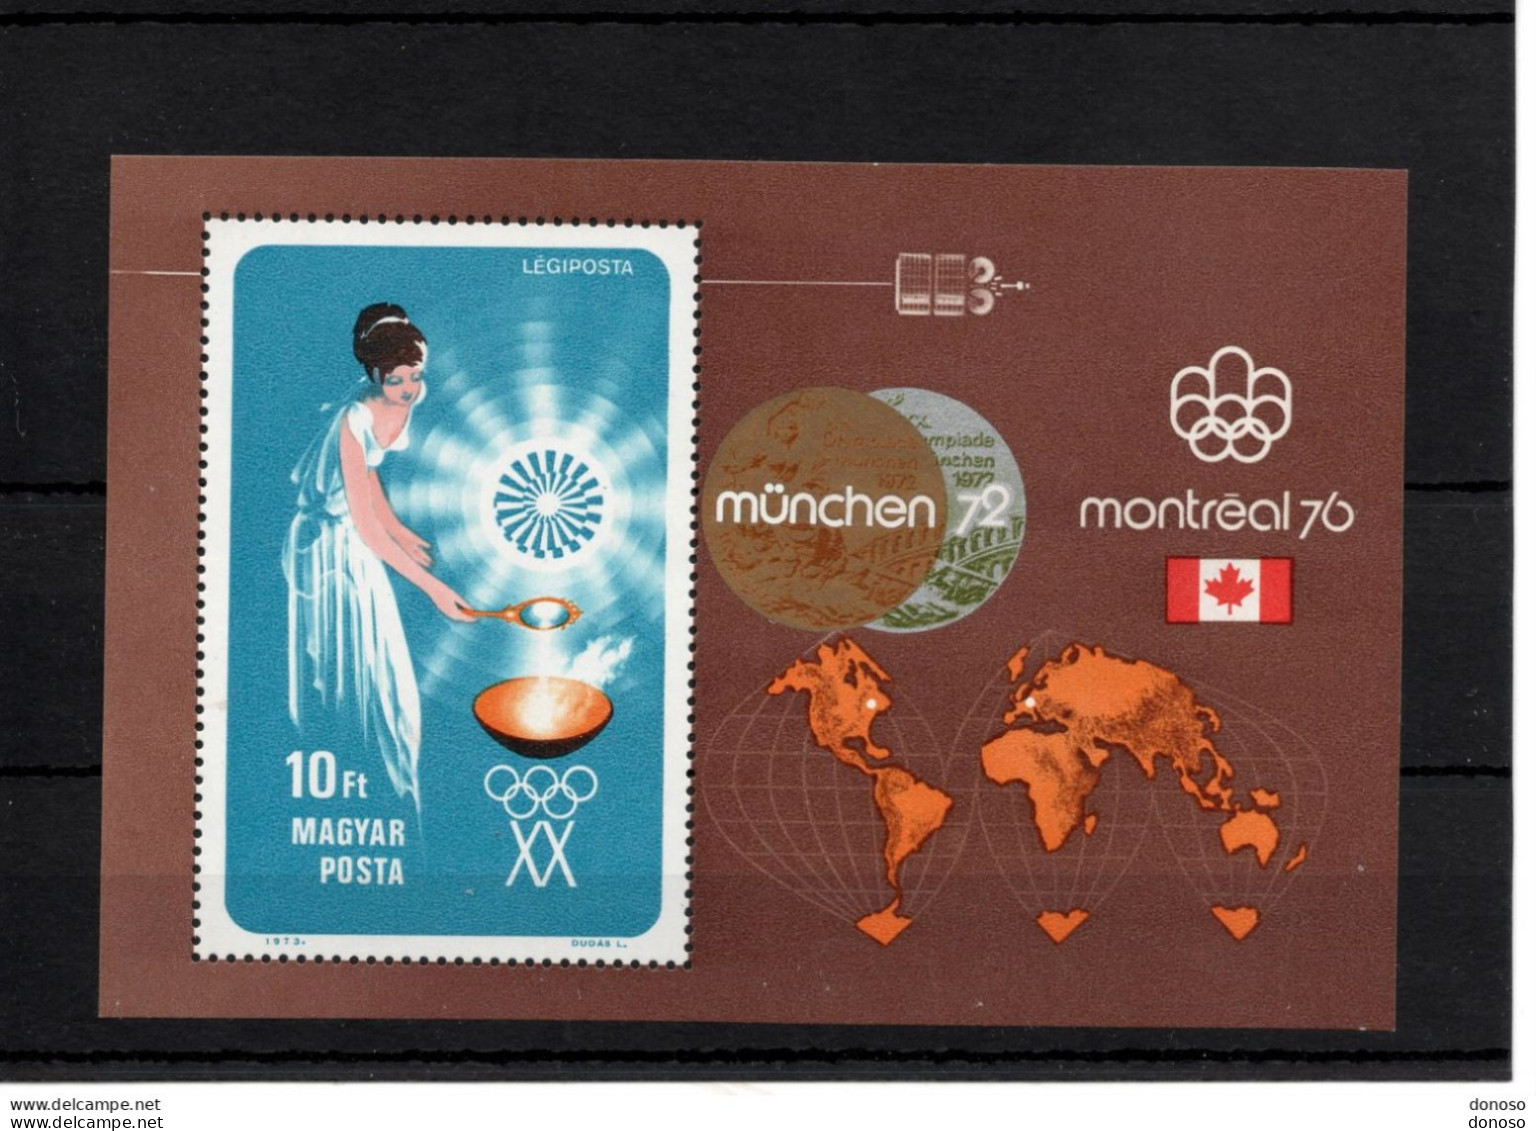 HONGRIE 1973 JEUX OLYMPIQUES DE MUNICH Yvert BF 102, Michel Block 96 NEUF** MNH Cote 10 Euros - Blocs-feuillets